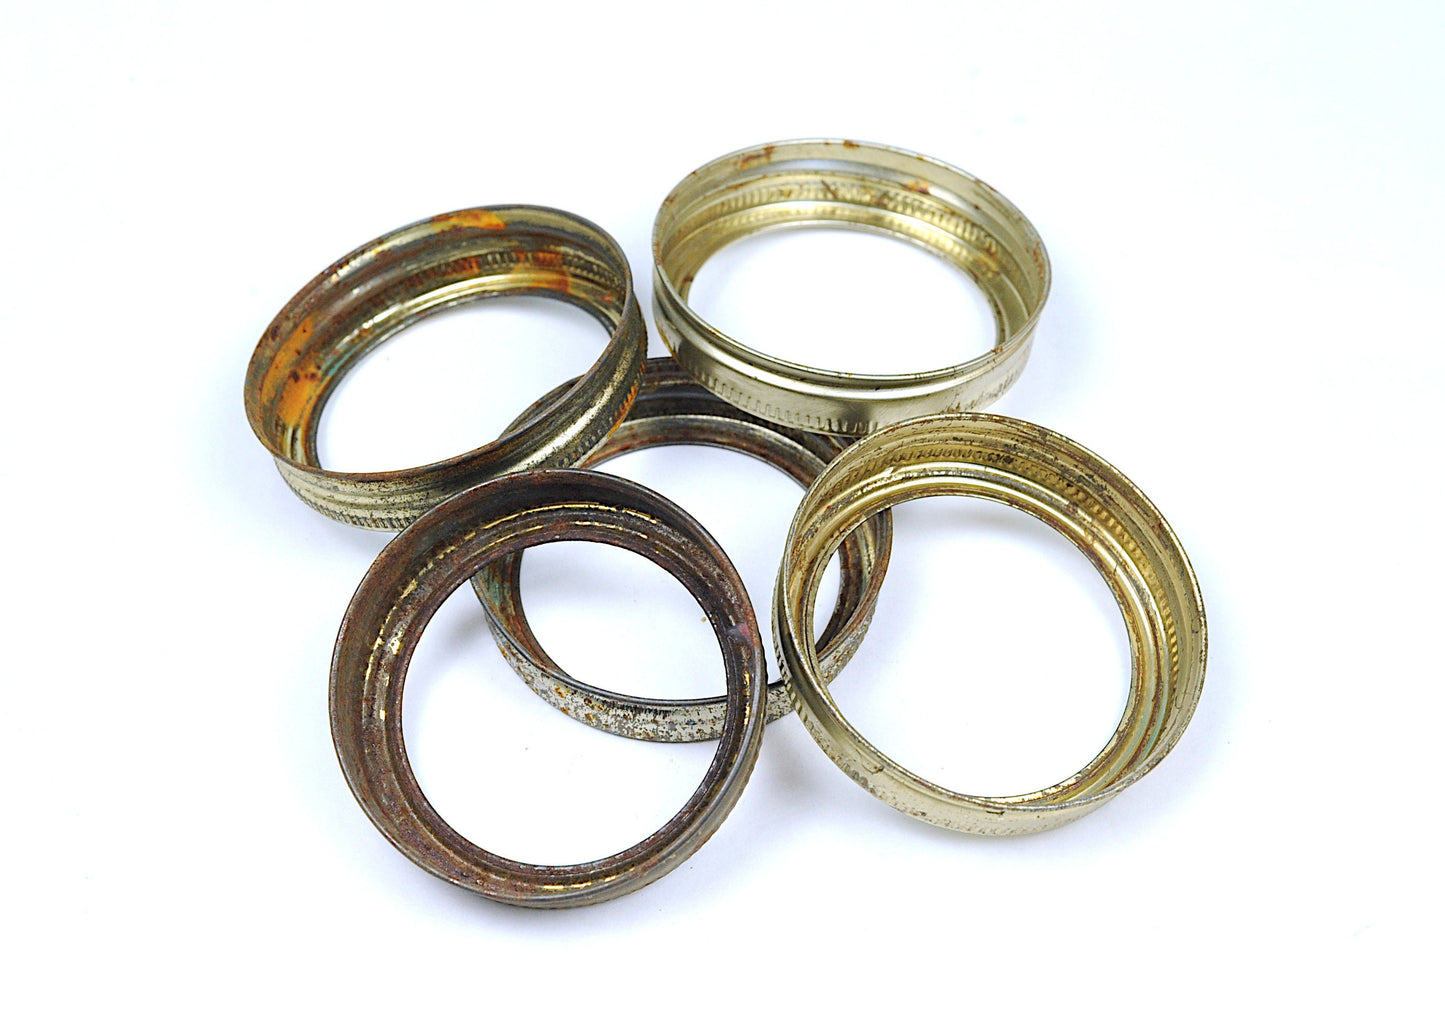 Mason lids & rings